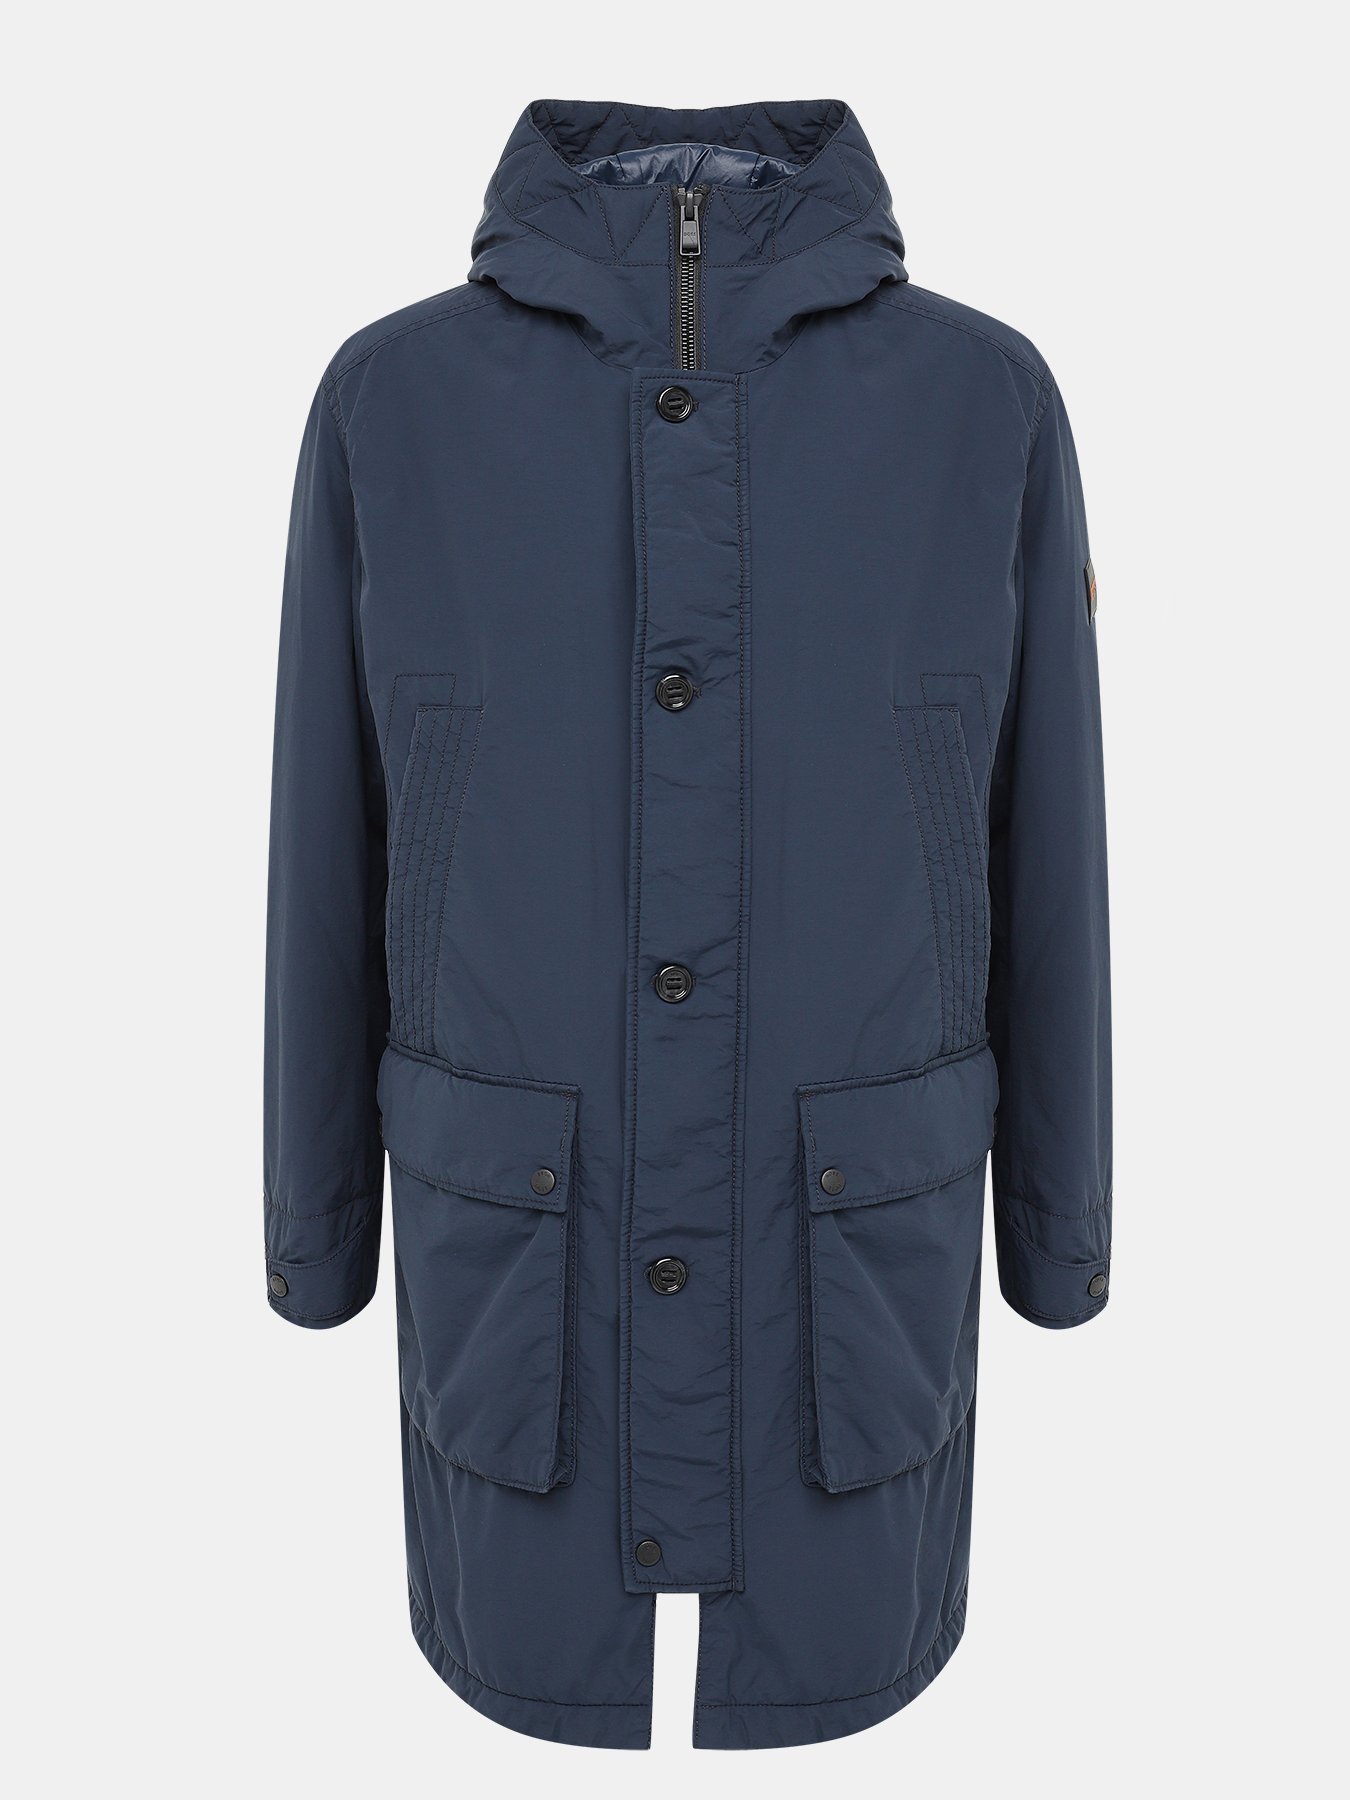 Удлиненная куртка Olgara BOSS 437892-029, цвет темно-синий, размер 56